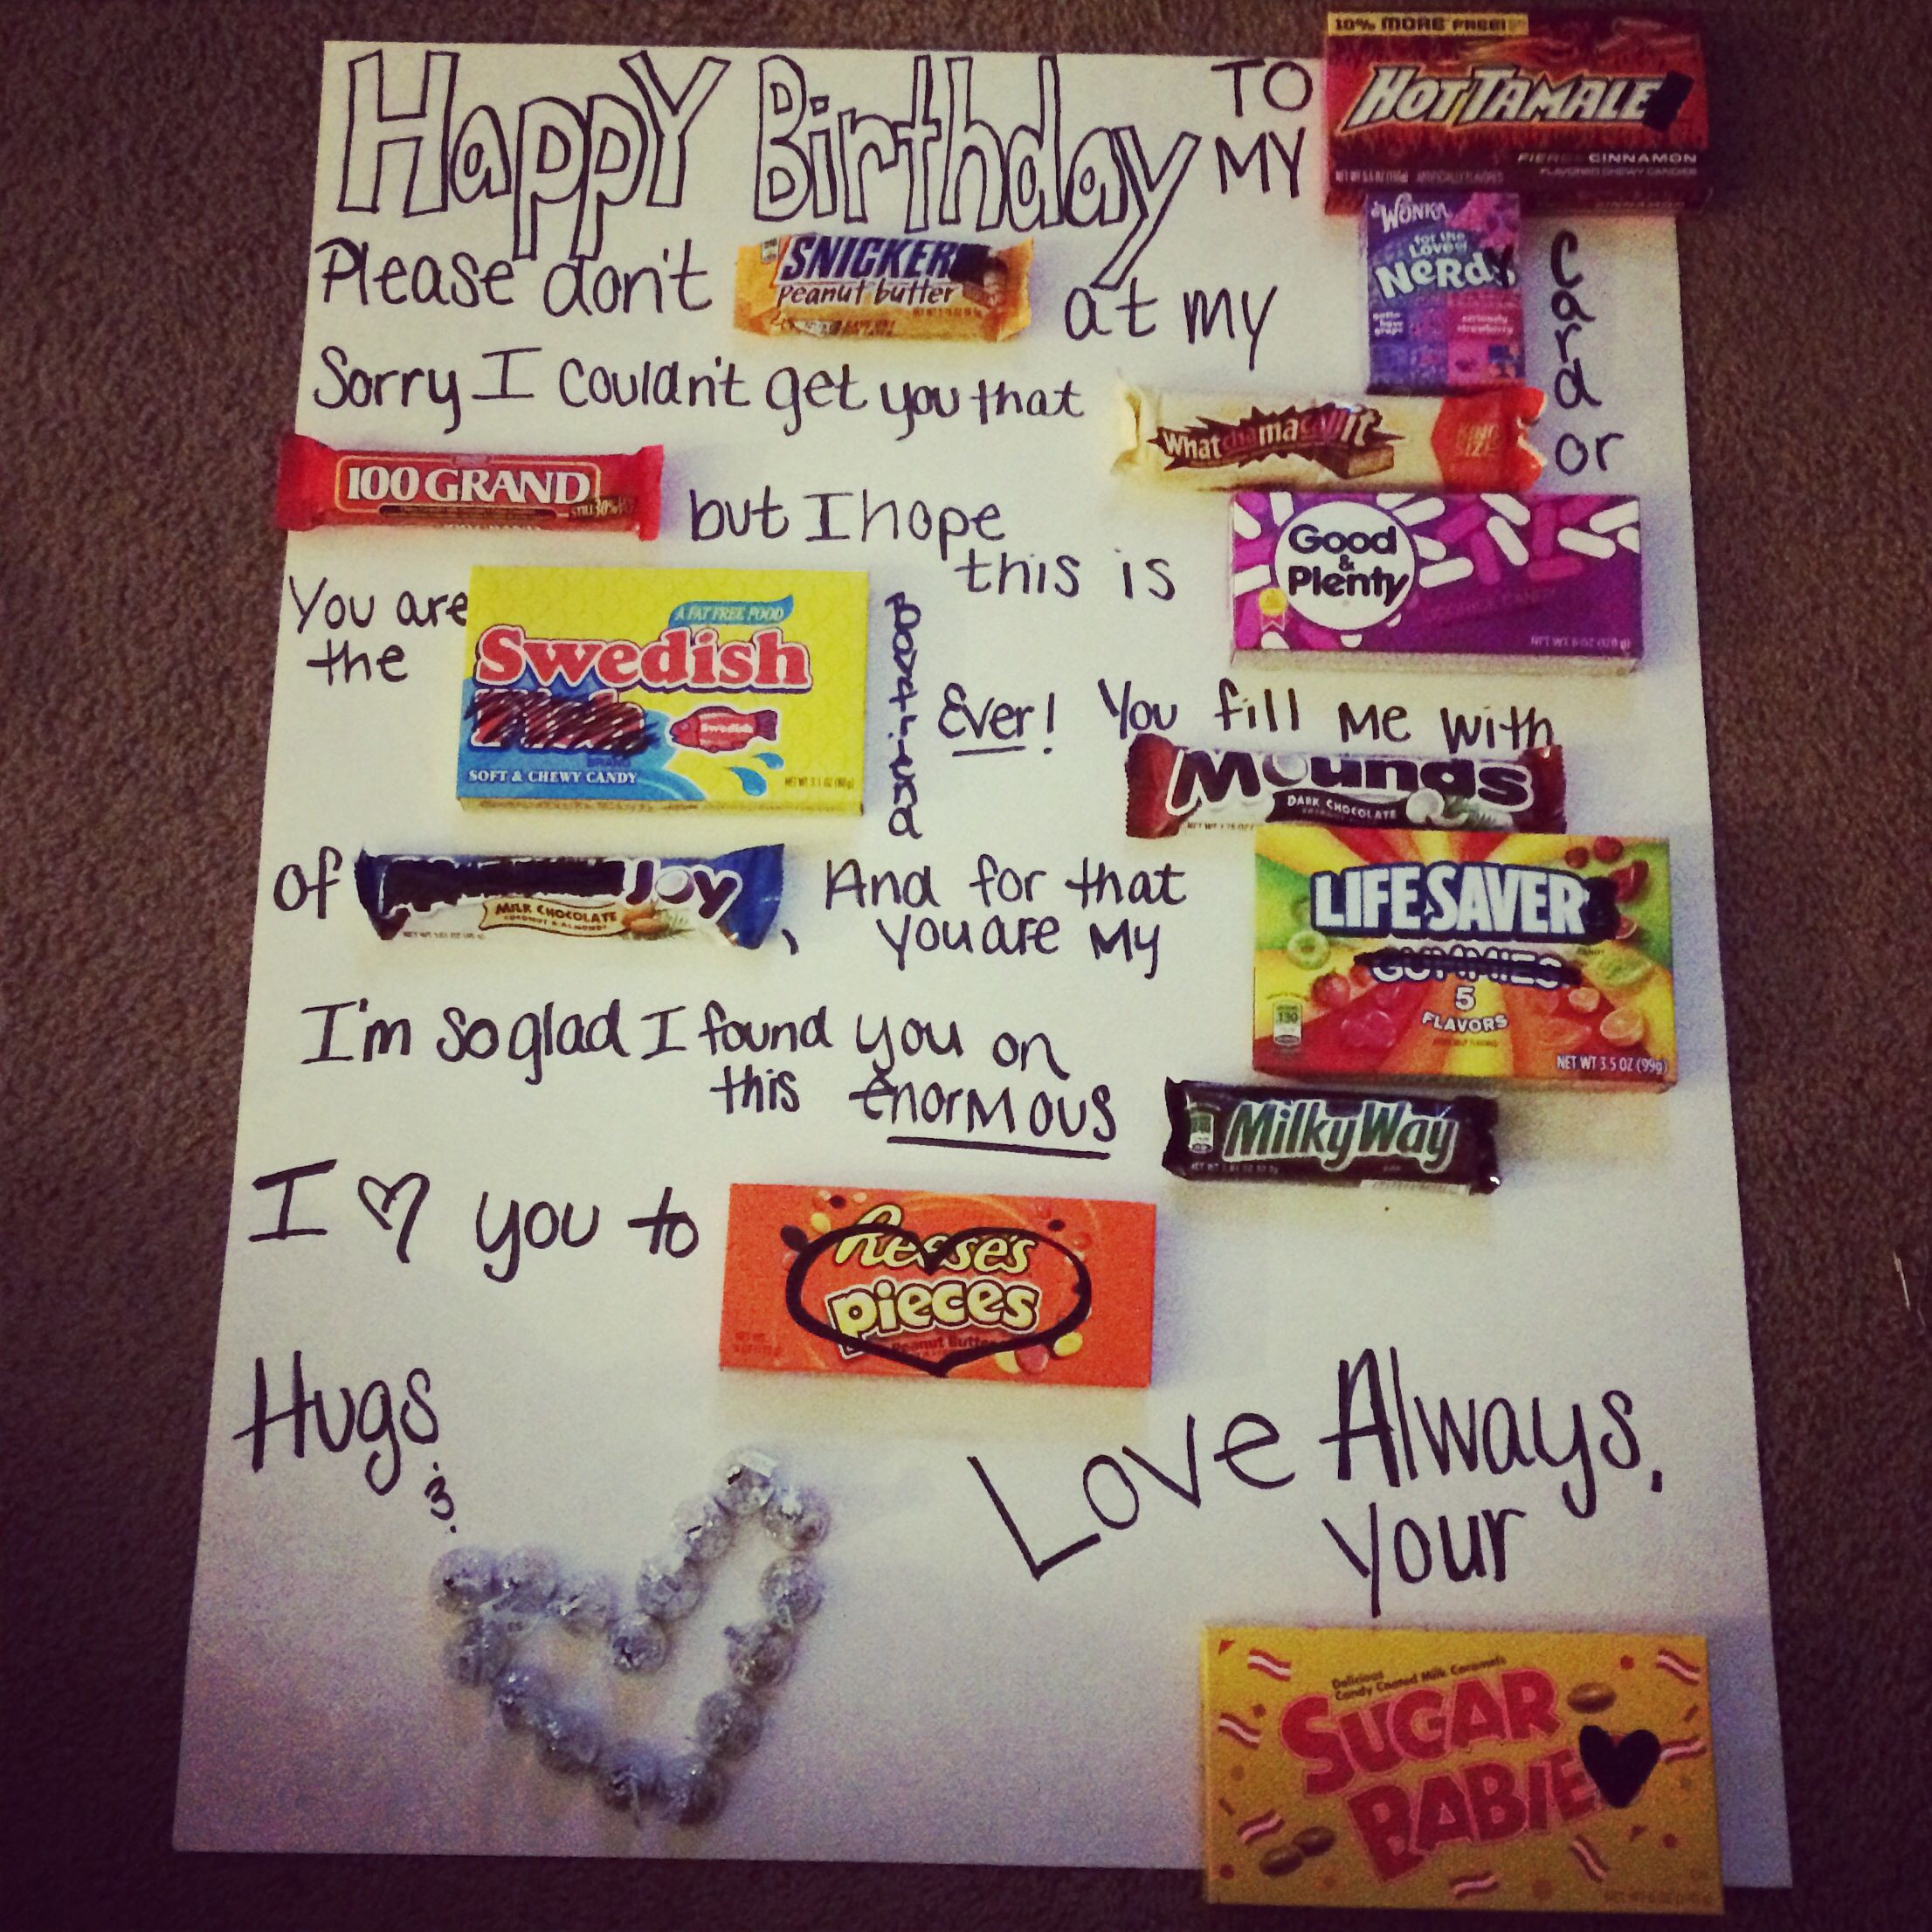 22Nd Birthday Gift Ideas For Boyfriend
 Boyfriend birthday poster I made for his 22nd birthday